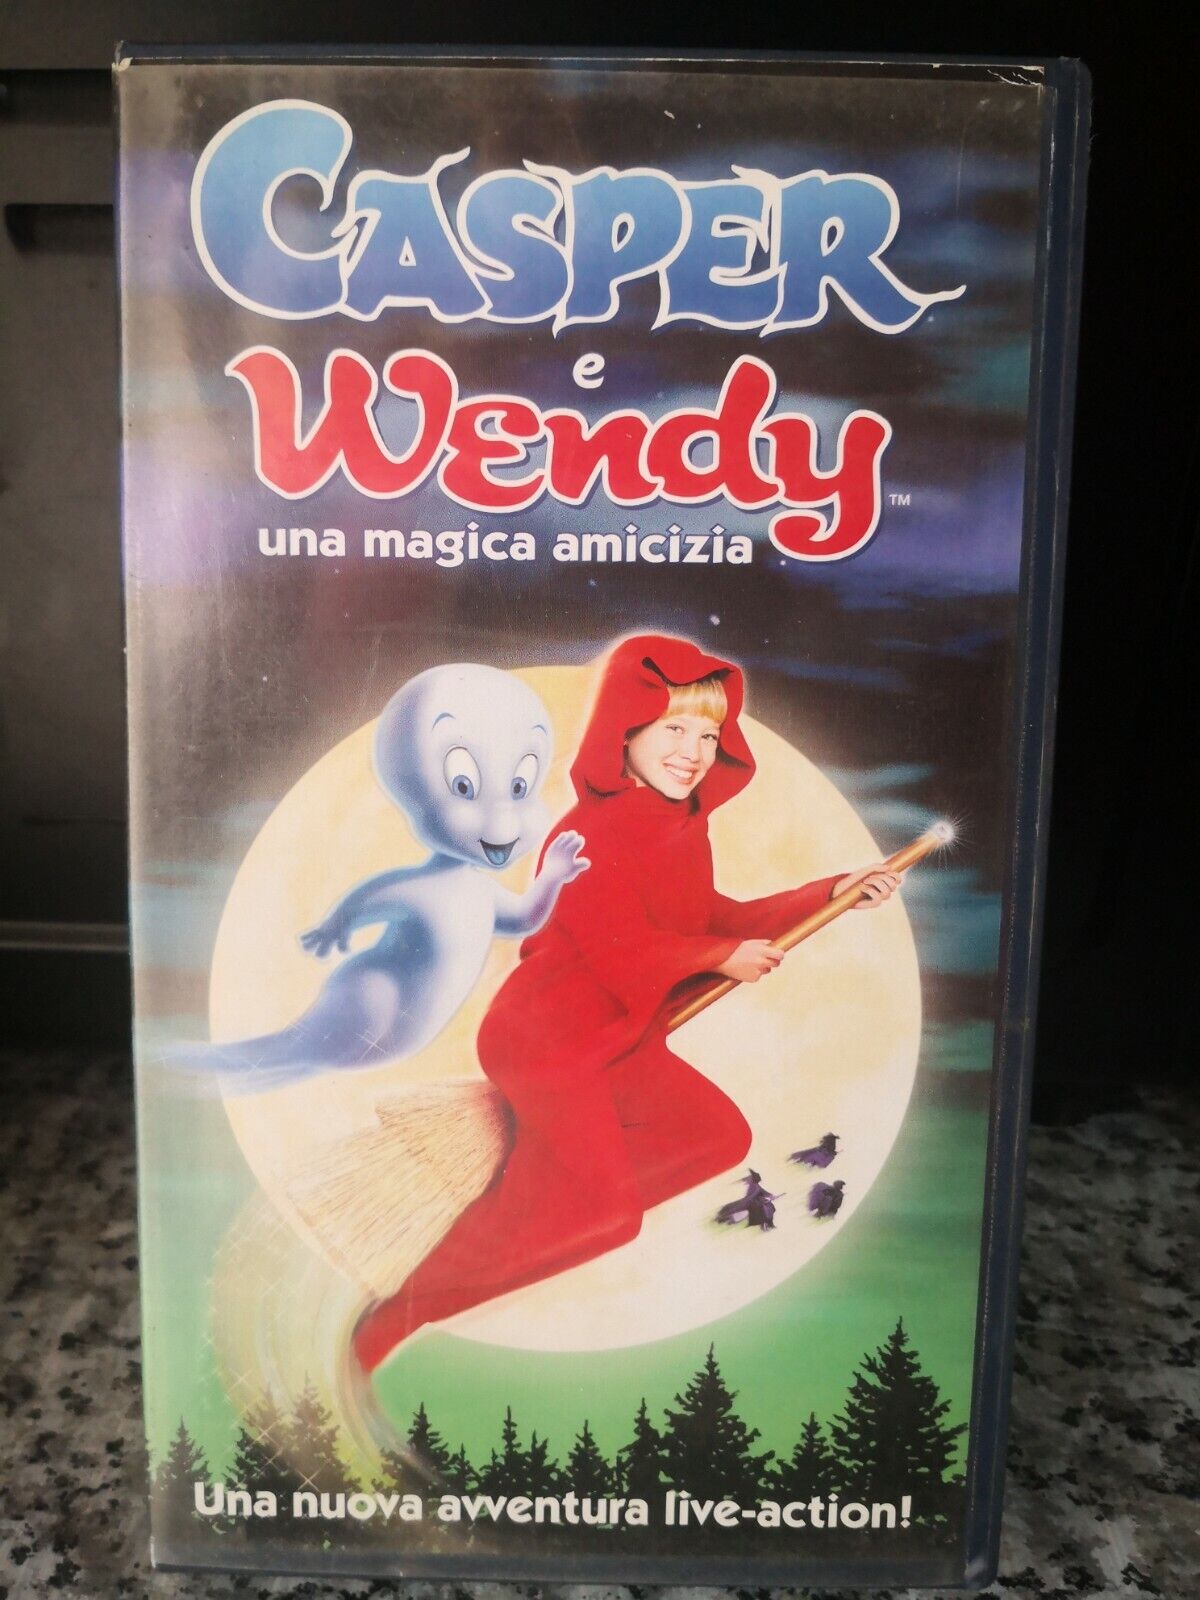 Casper e Wendy una magica amicizia - vhs - 1999 - Univideo -F vhs usato